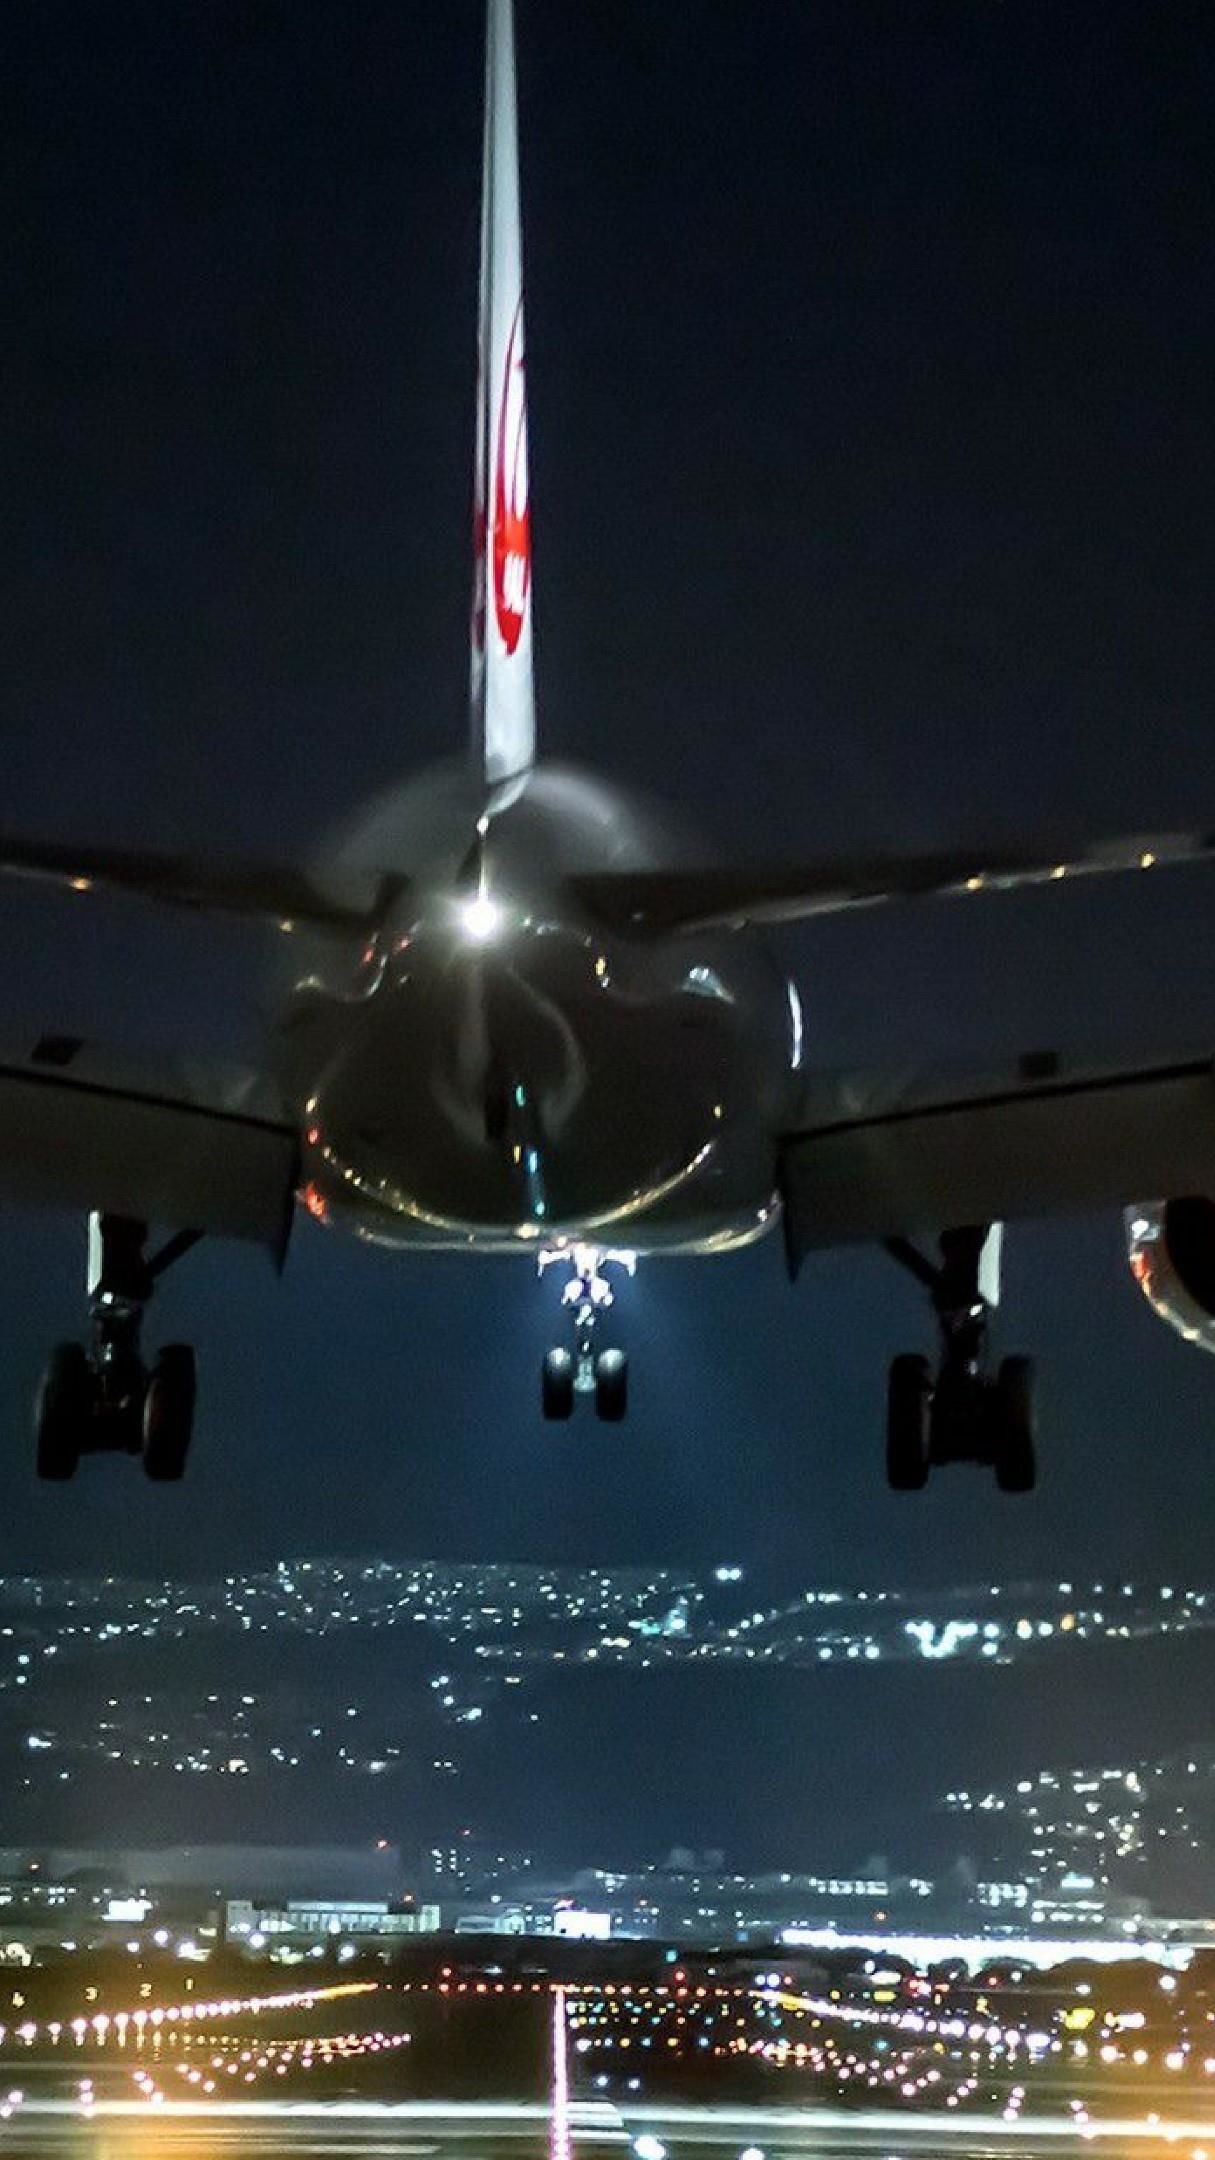 Airplane Landing At Night ️ Wallpaper Backiee